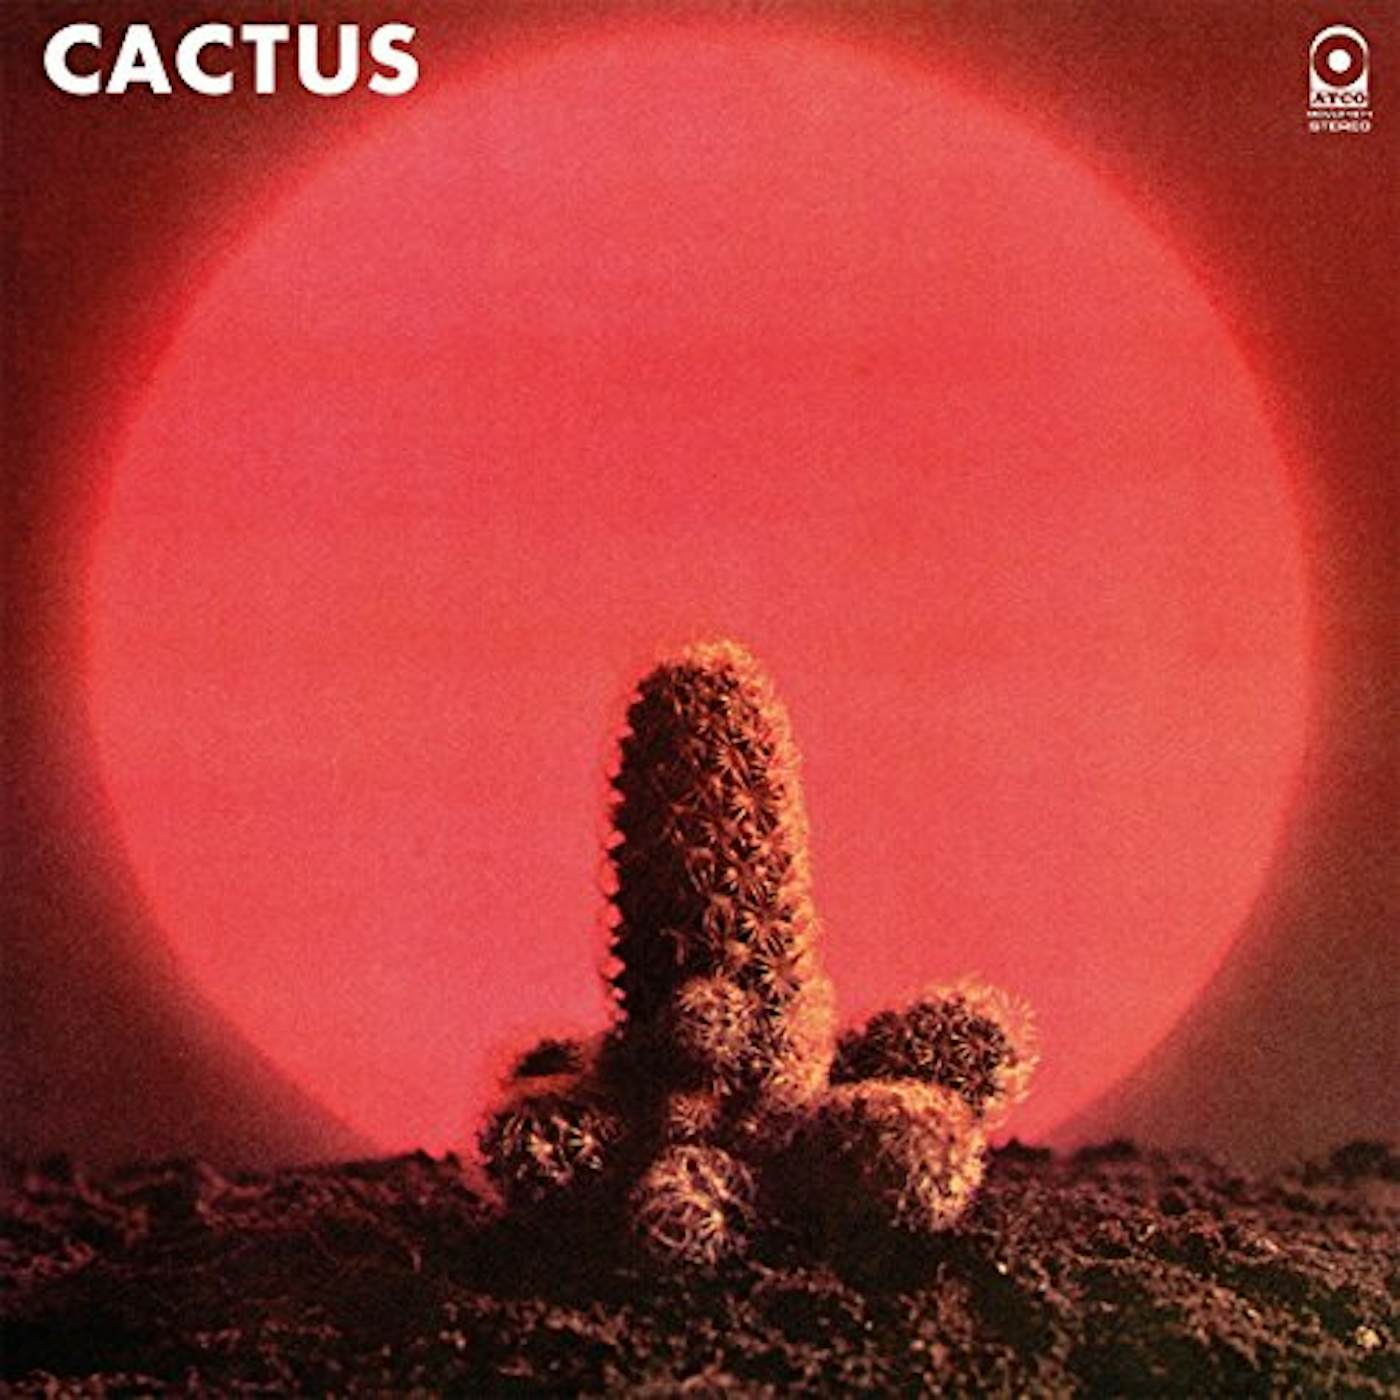 CACTUS (180G) Vinyl Record